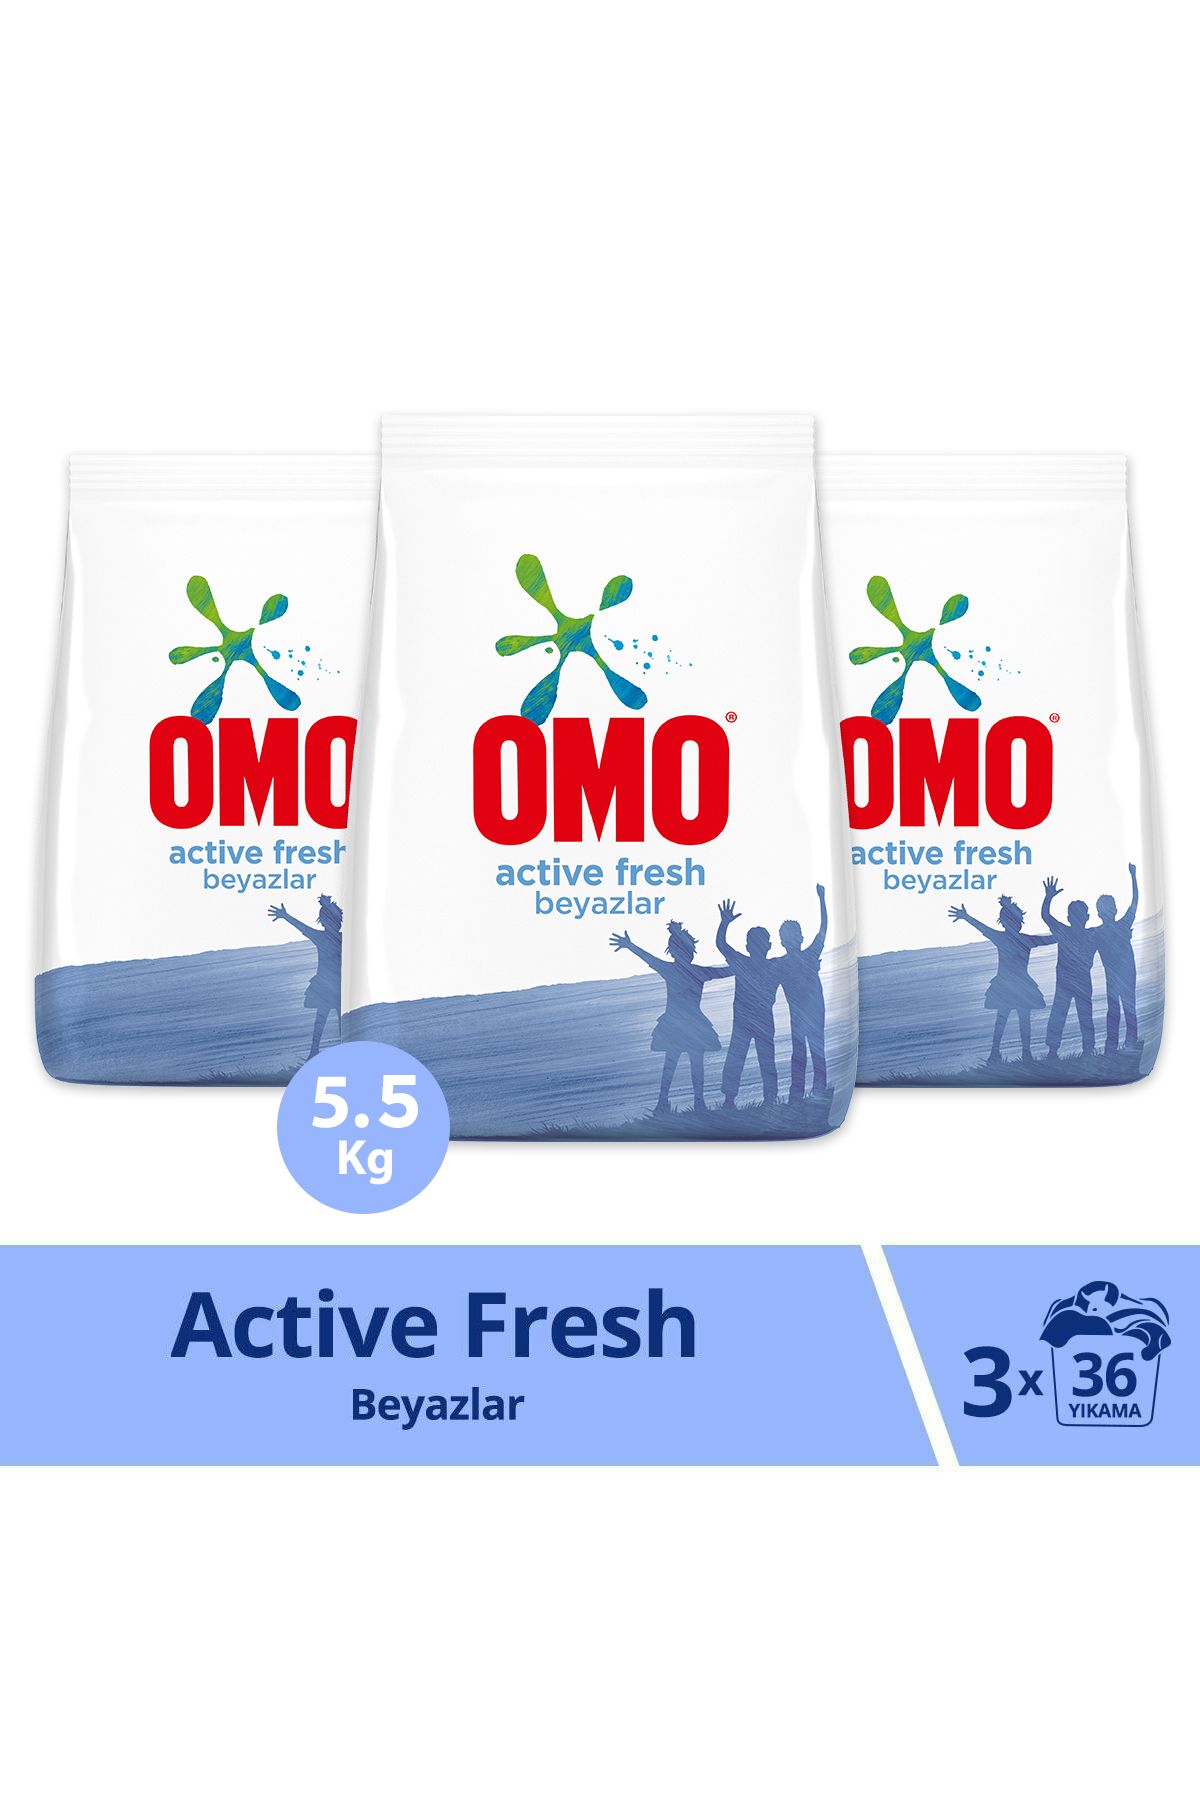 Omo Active Fresh Toz Çamaşır Deterjanı Beyazlar Için En Zorlu Lekeleri Çıkarır 5.5 Kg 36yıkama 3adet